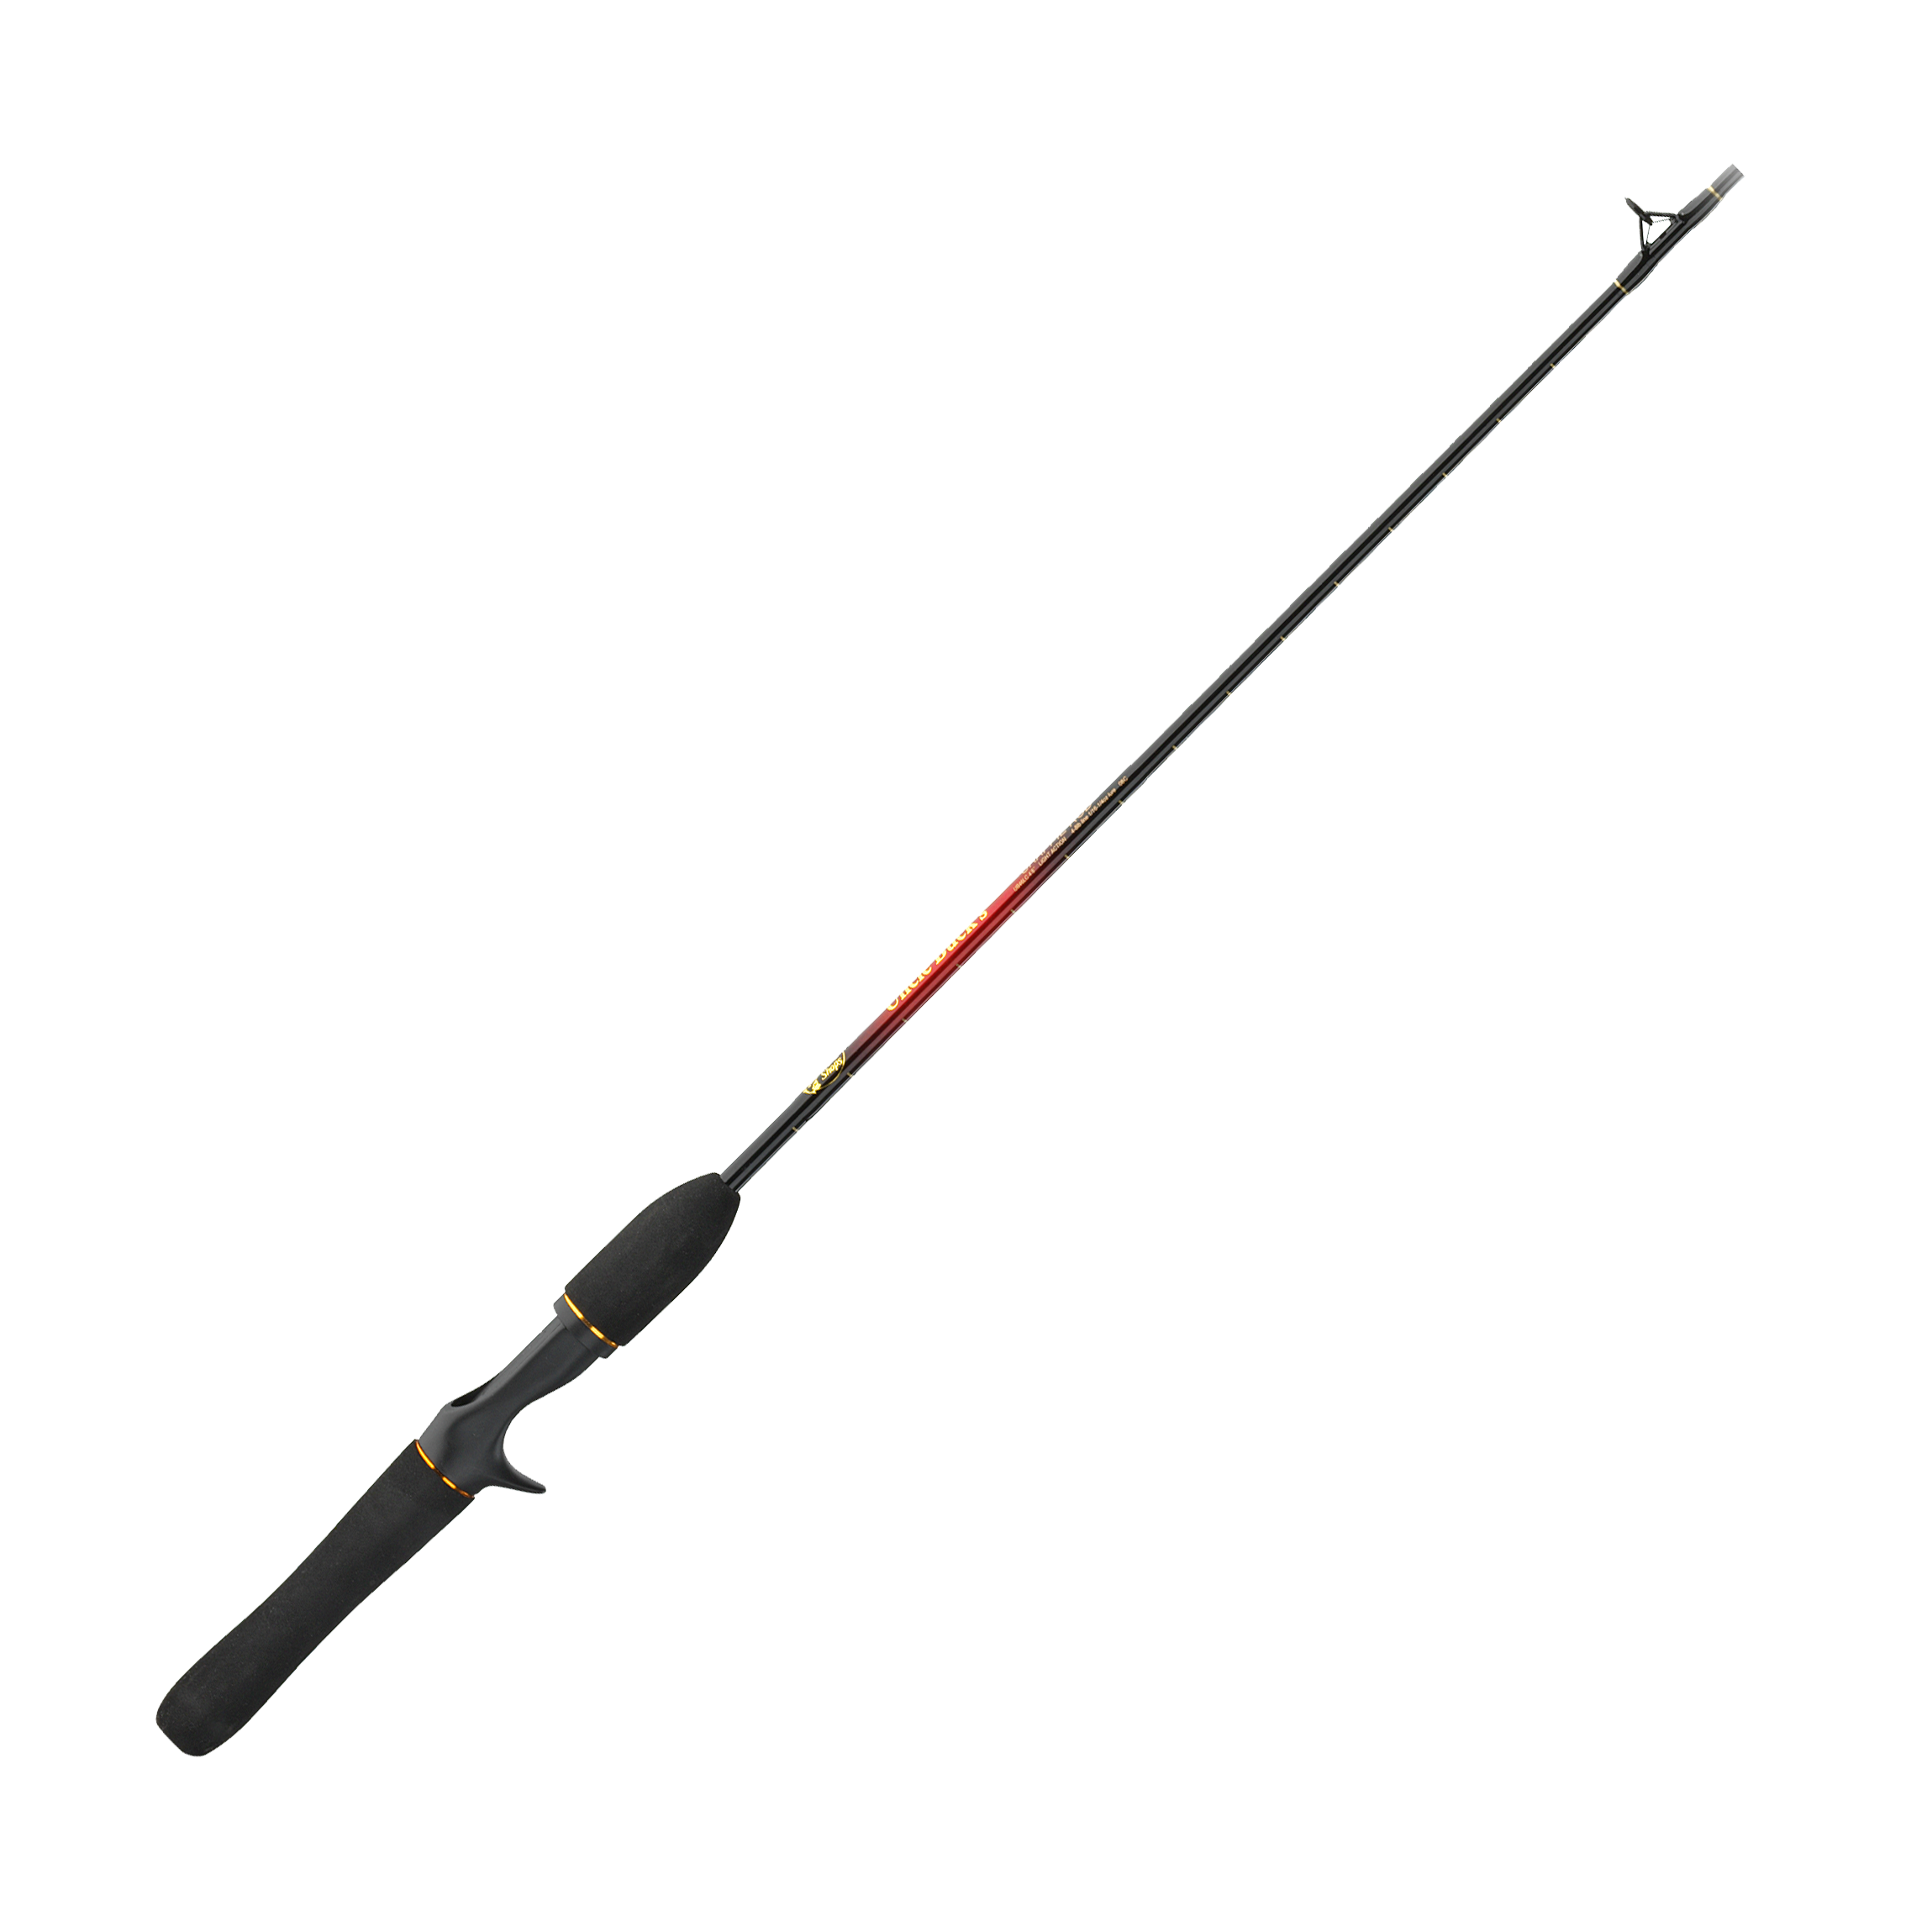 Fishing Rods - Go Salmon Fishing